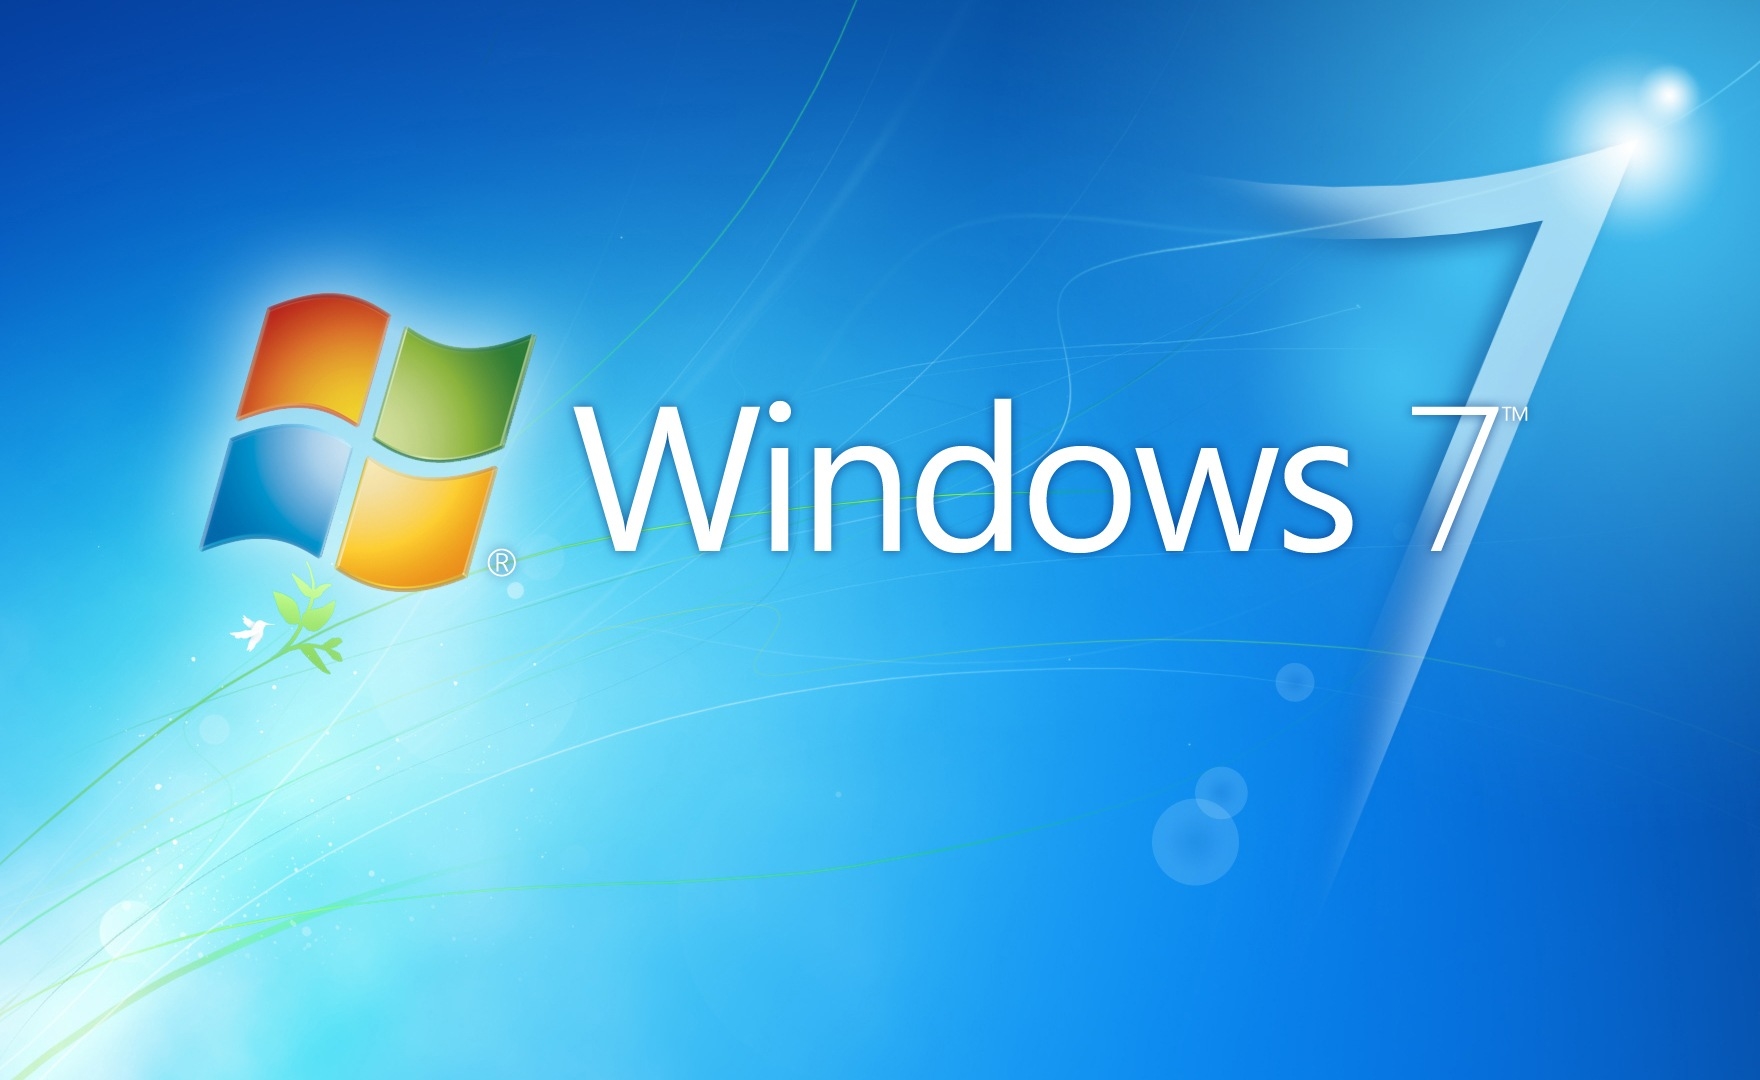 Windows 7 Pro agli sgoccioli, un pop-up ricorda di passare a Windows 10